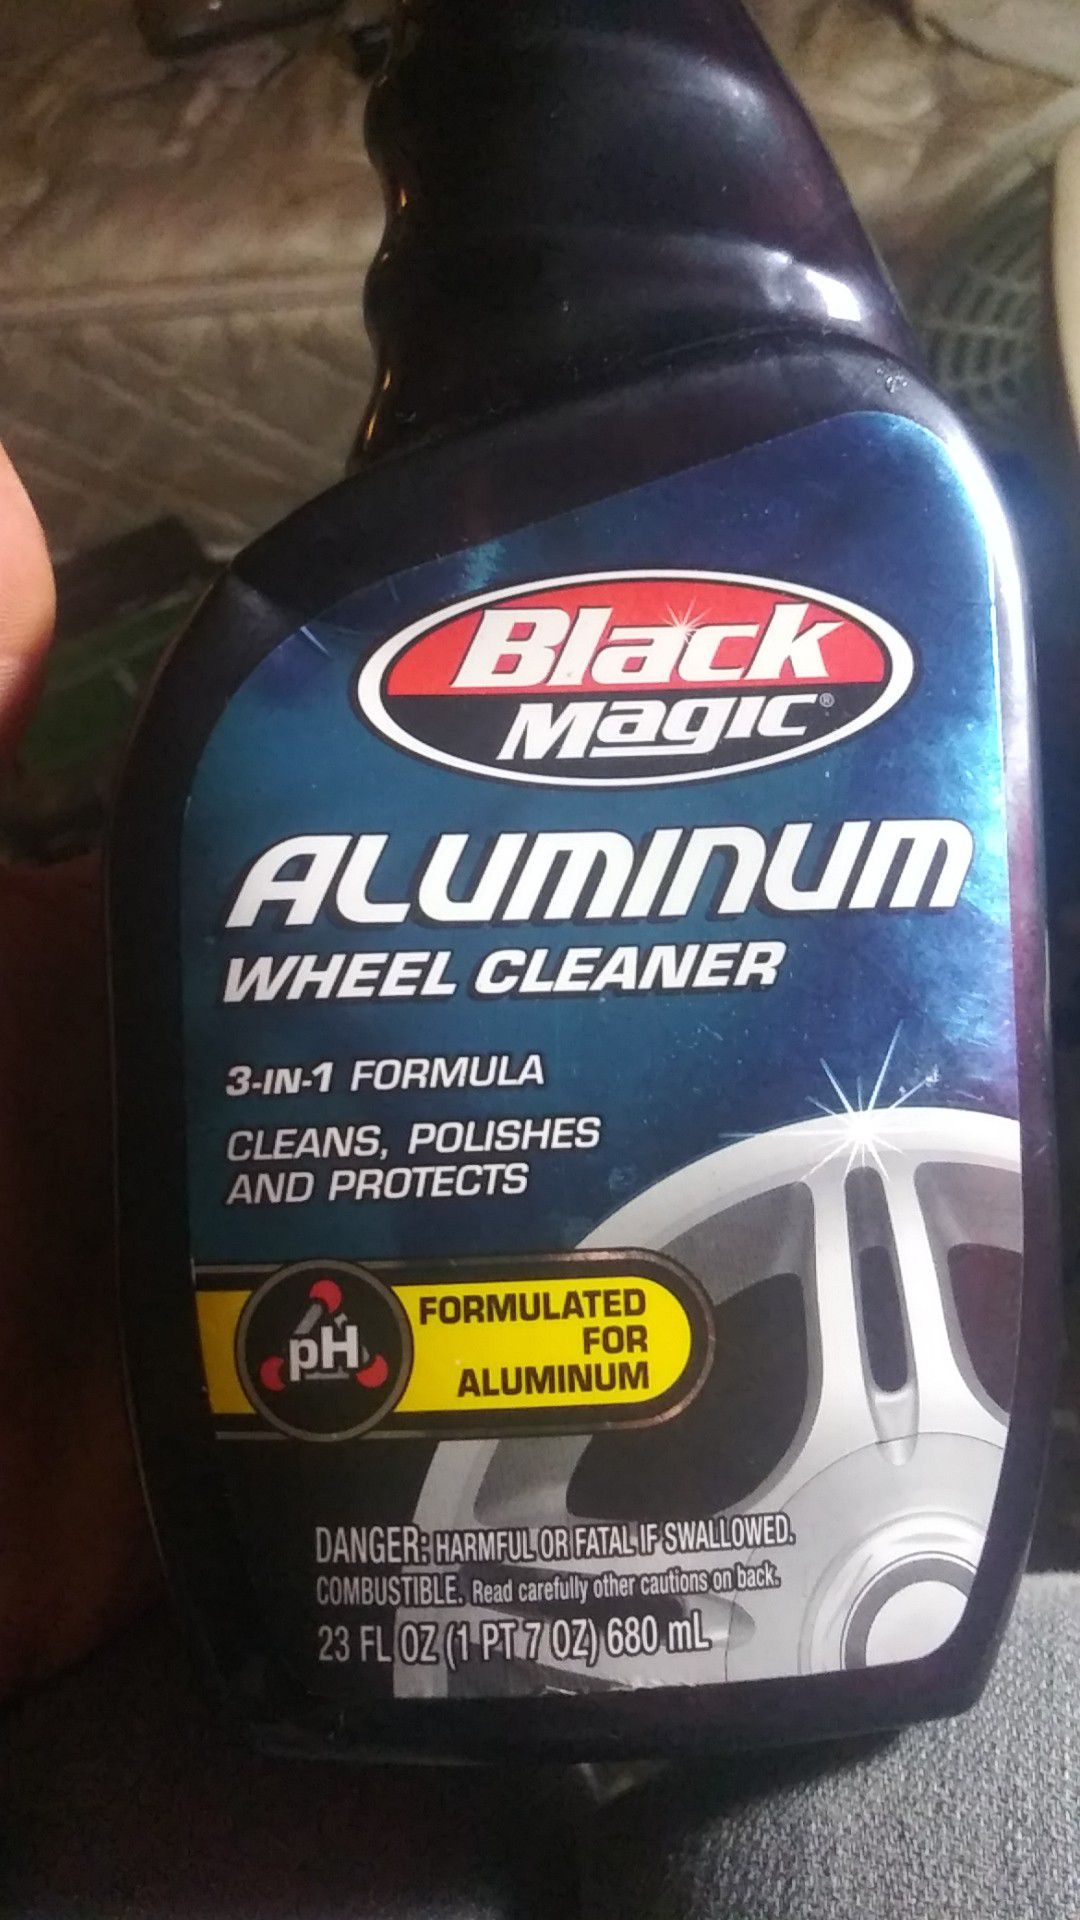 Full bottle of Black magic aluminium. Rim cleaner